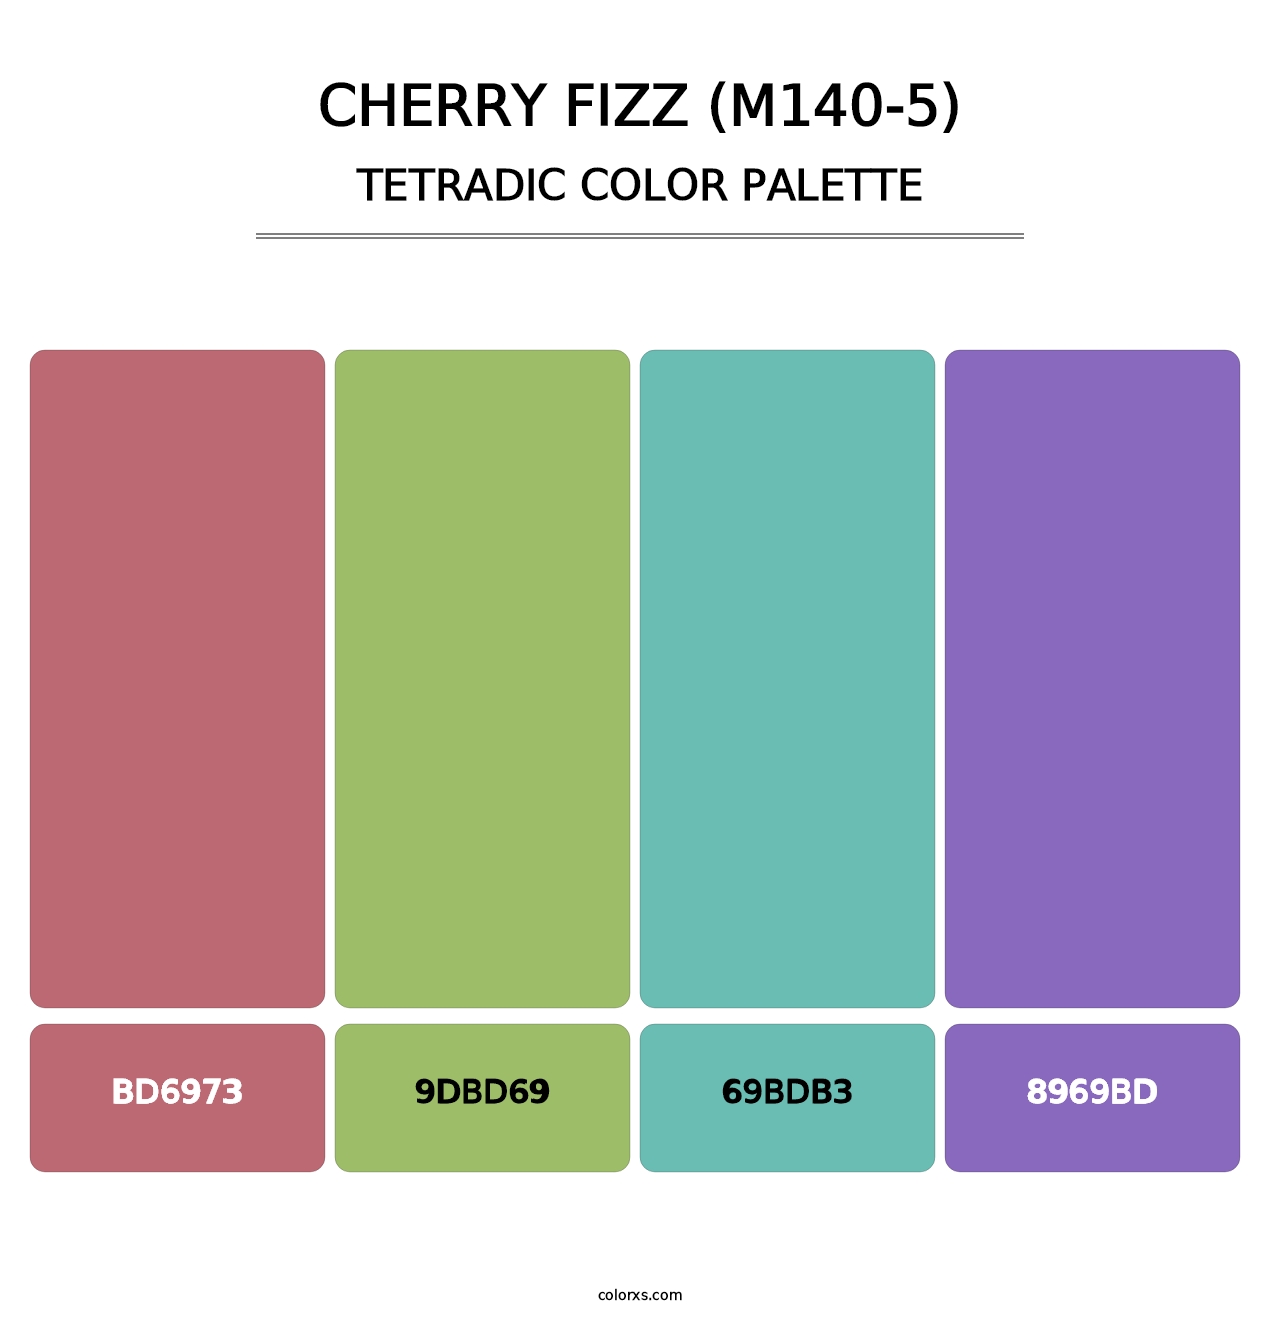 Cherry Fizz (M140-5) - Tetradic Color Palette